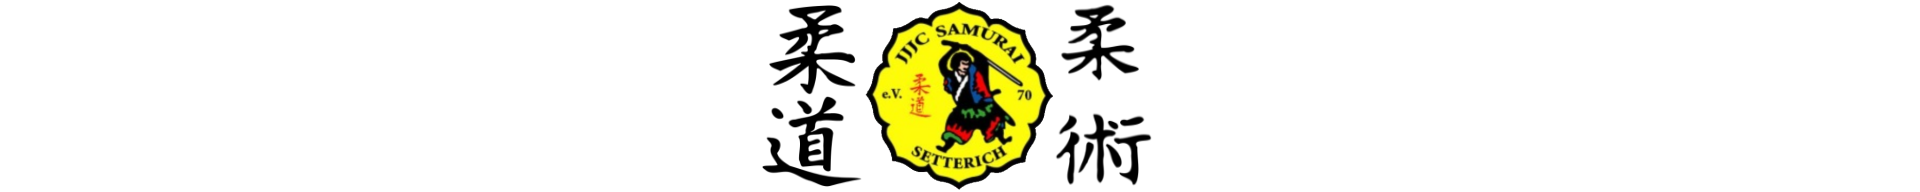 JJJC Samurai Setterich e.V.